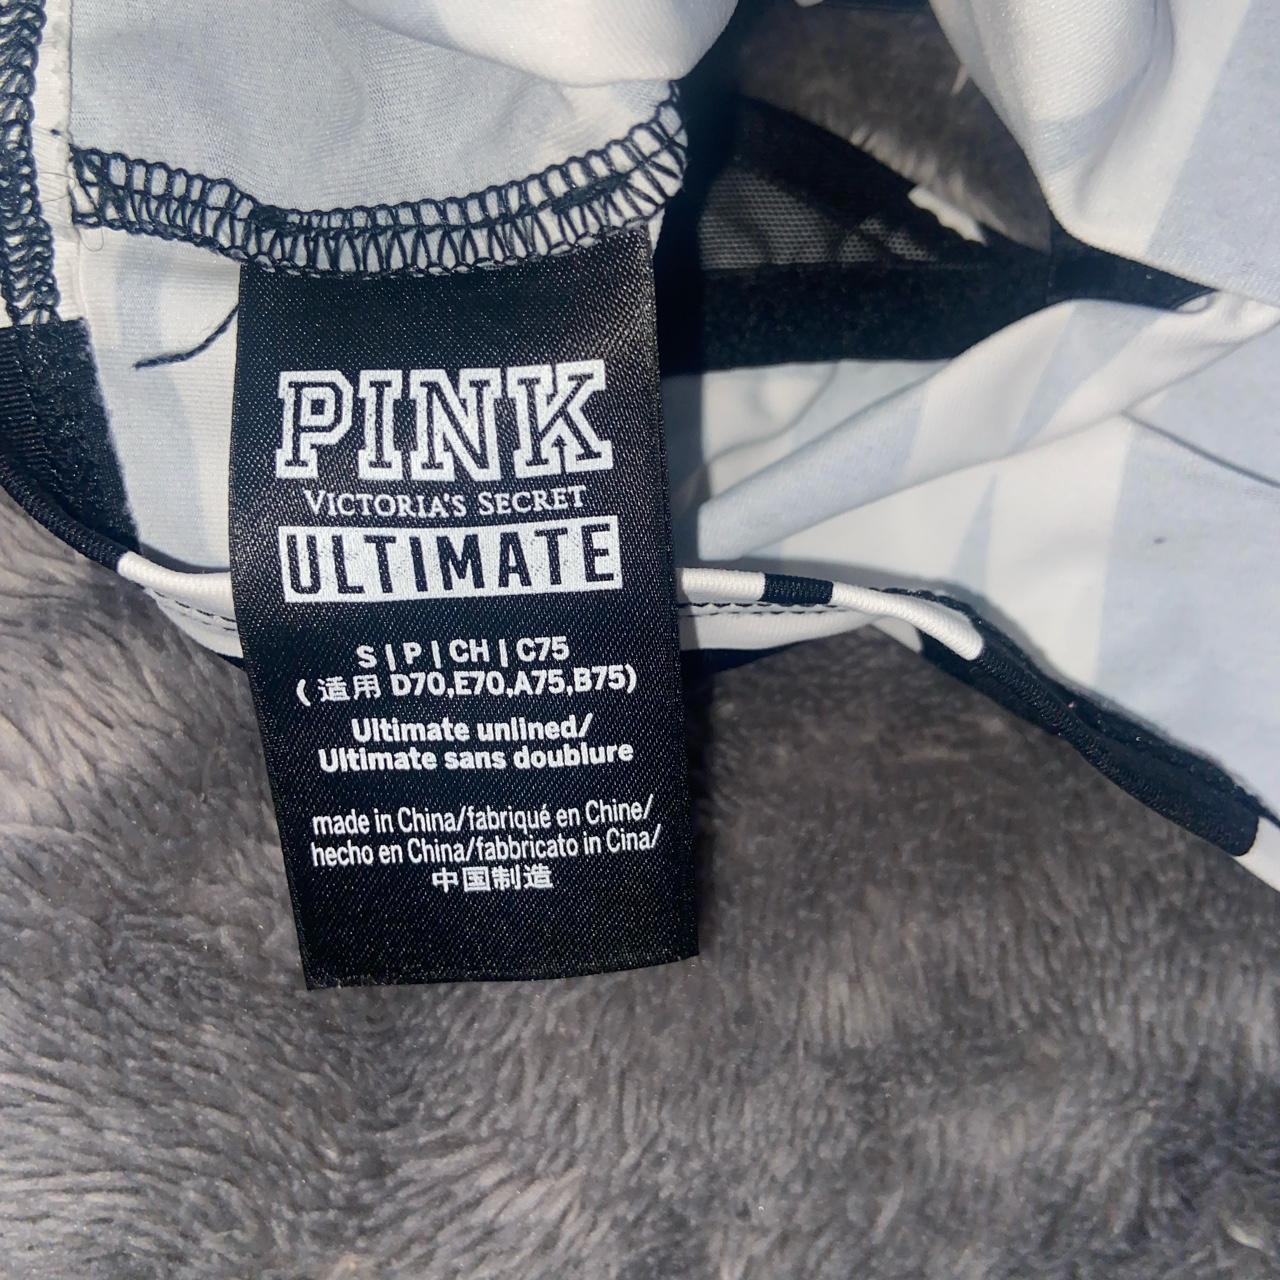 Victoria's Secret PINK ultimate unlined bralette. - Depop